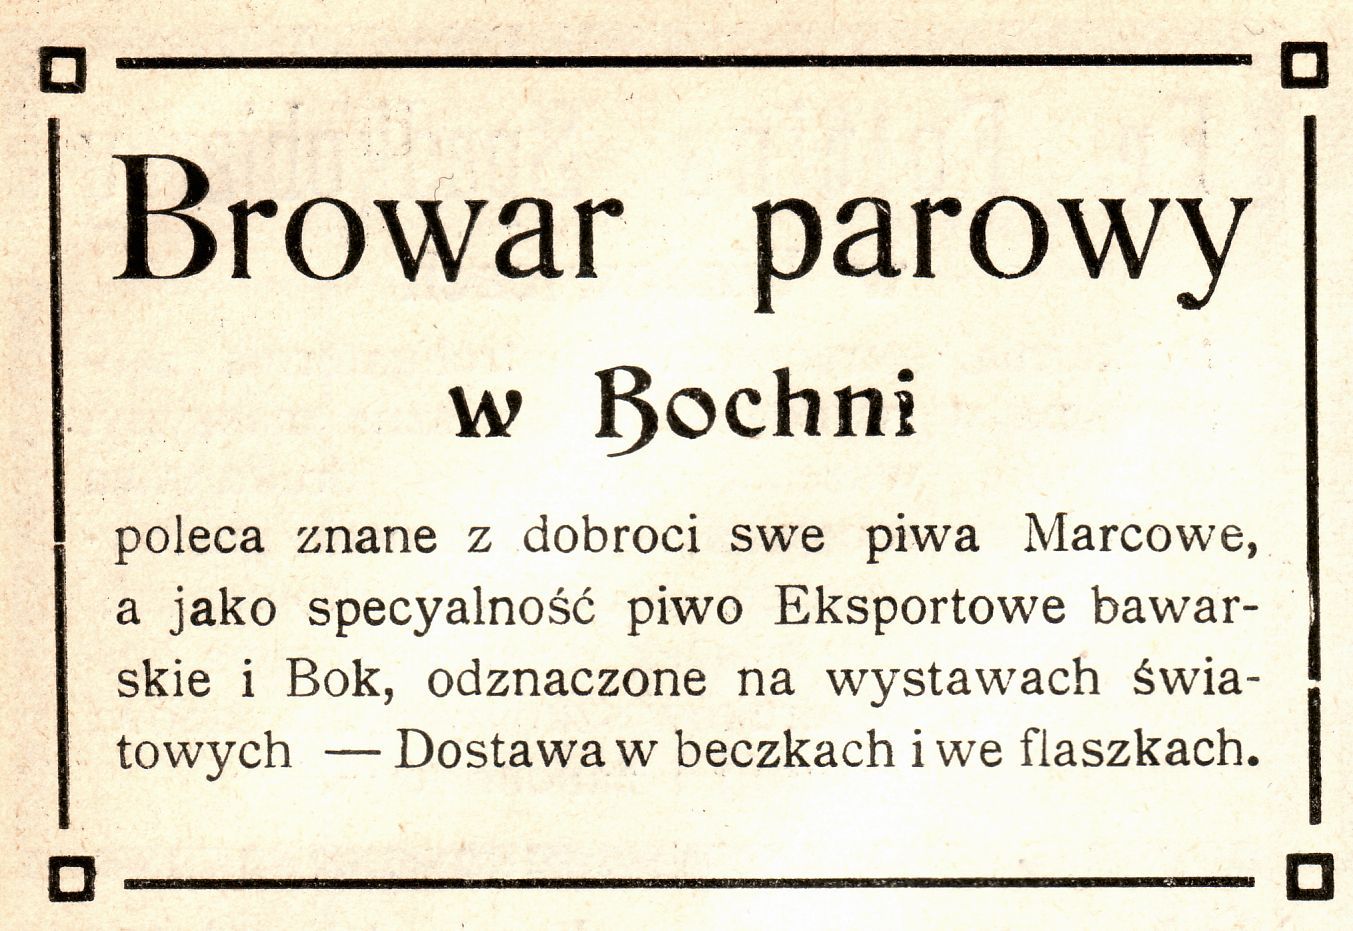 Reklama prasowa browaru parowego w Bochni